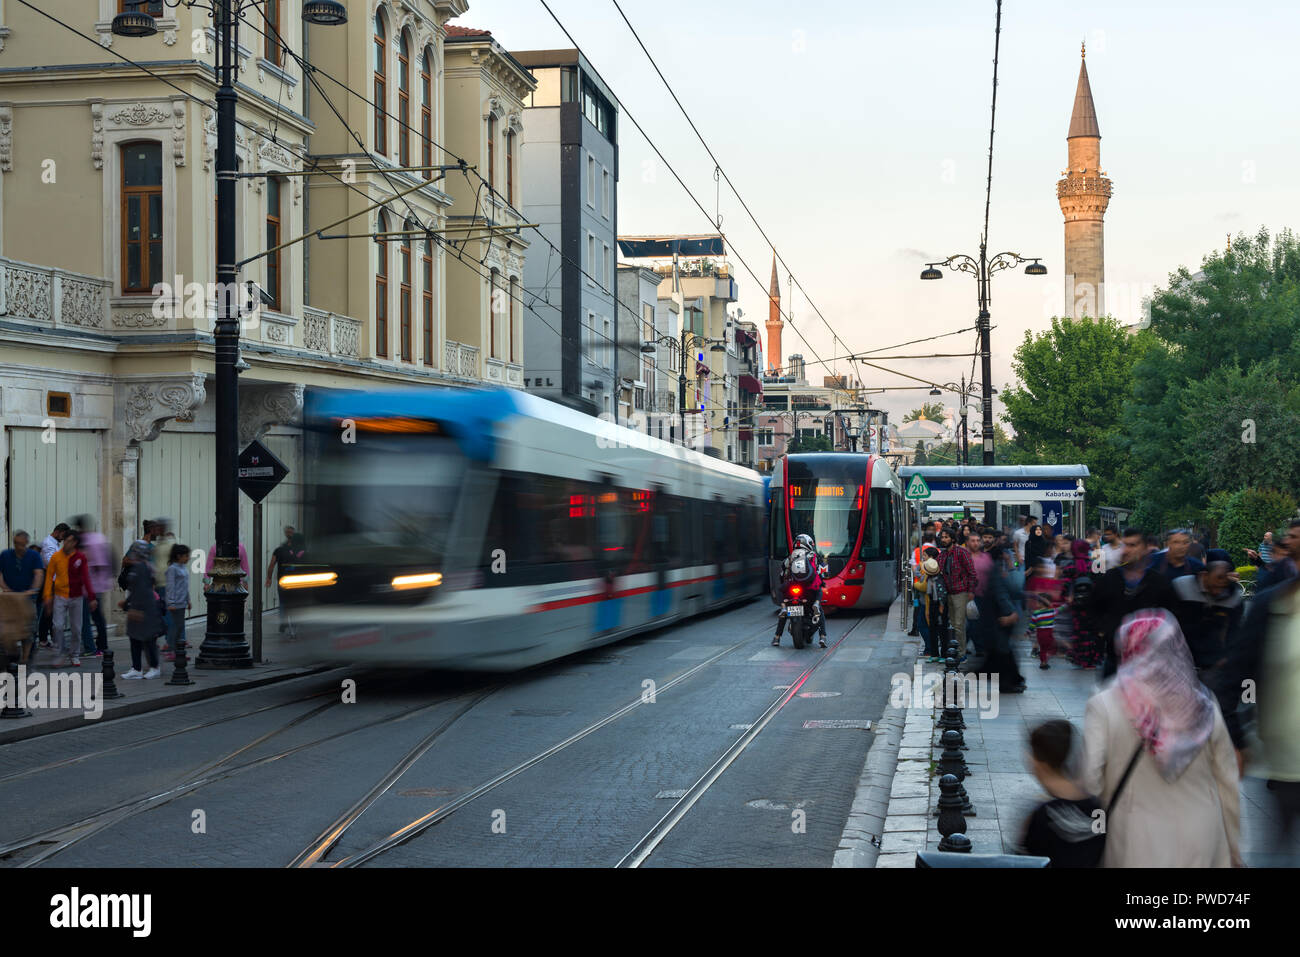 La station de tramway Sultanahmet T1 avec les tramways comme à l'arrivée et au départ de la file d'habitants, Istanbul, Turquie Banque D'Images